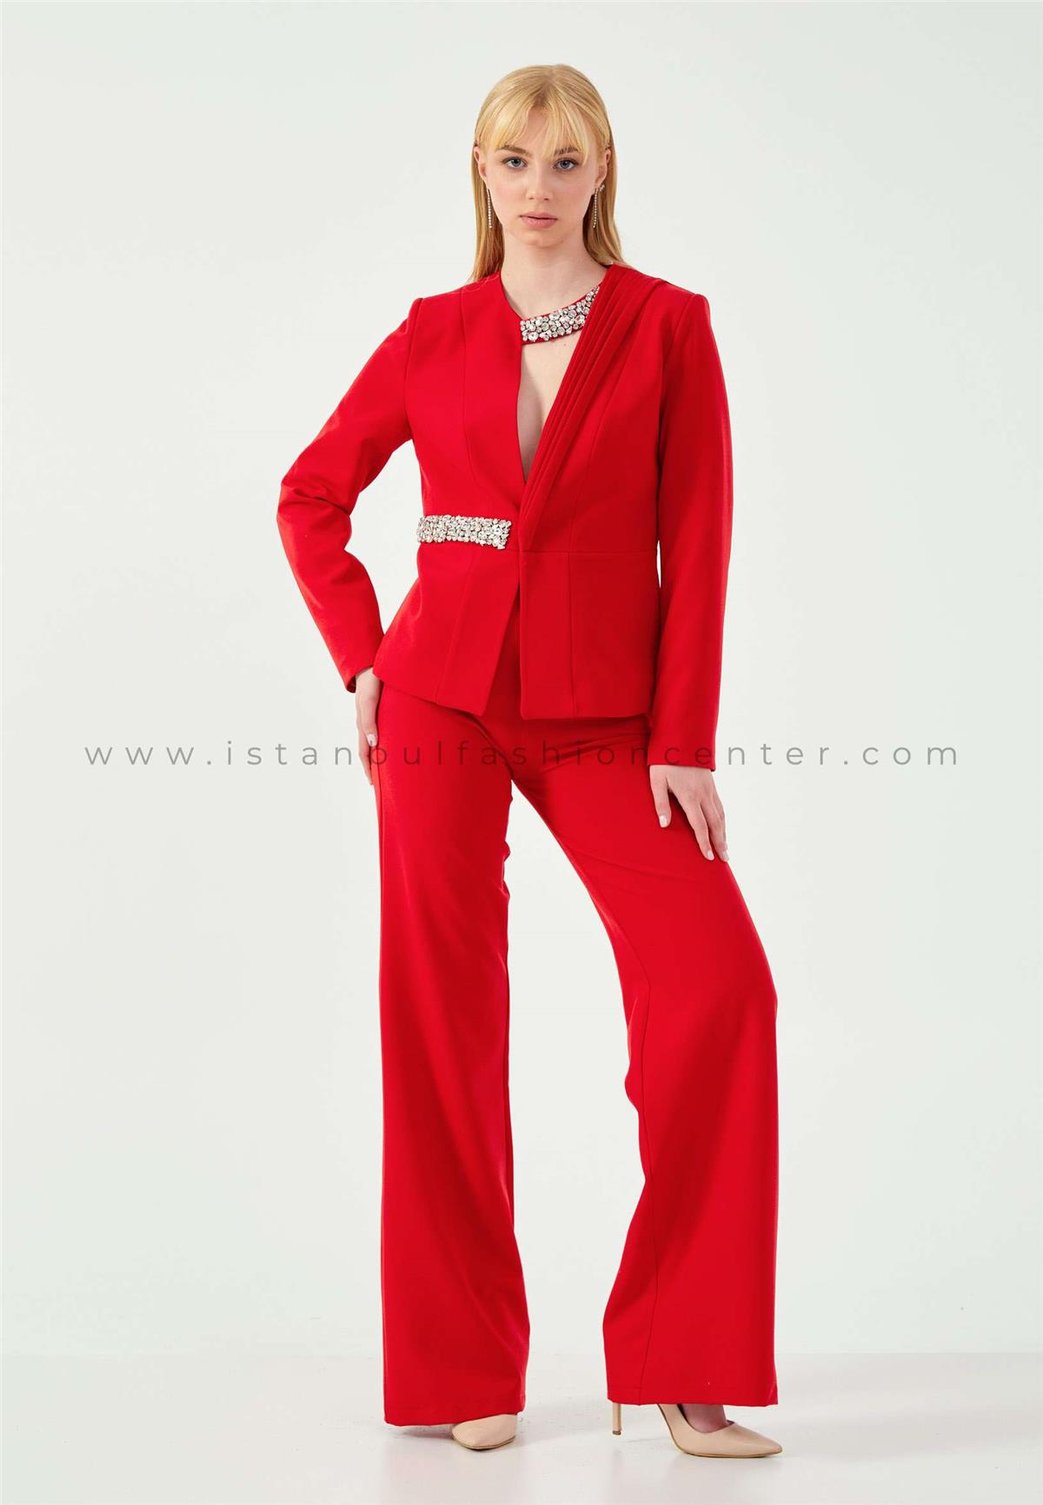 Regular Red Suit